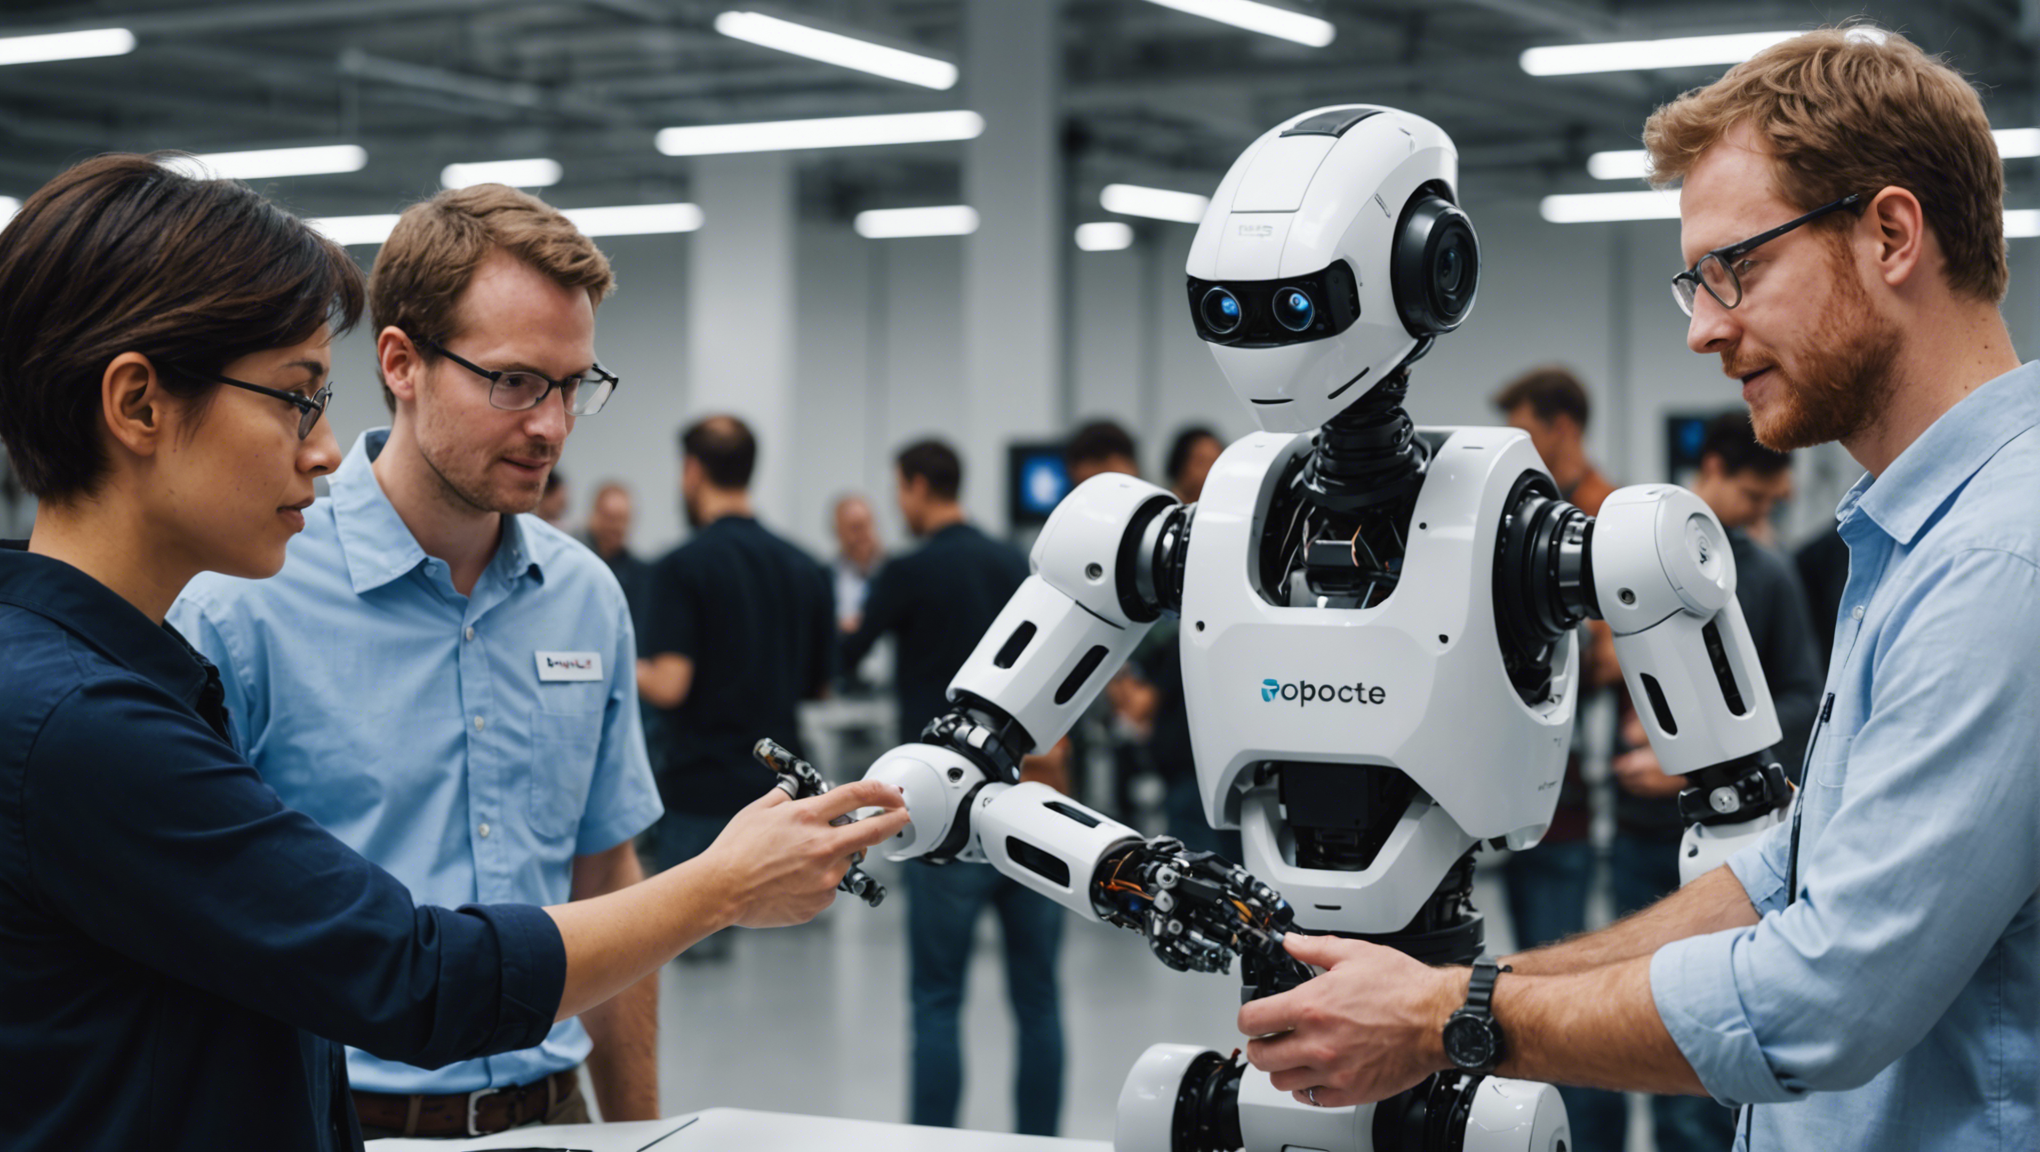 découvrez la nouvelle ère de la robotique collaborative et explorez les avancées révolutionnaires dans ce domaine en pleine expansion.